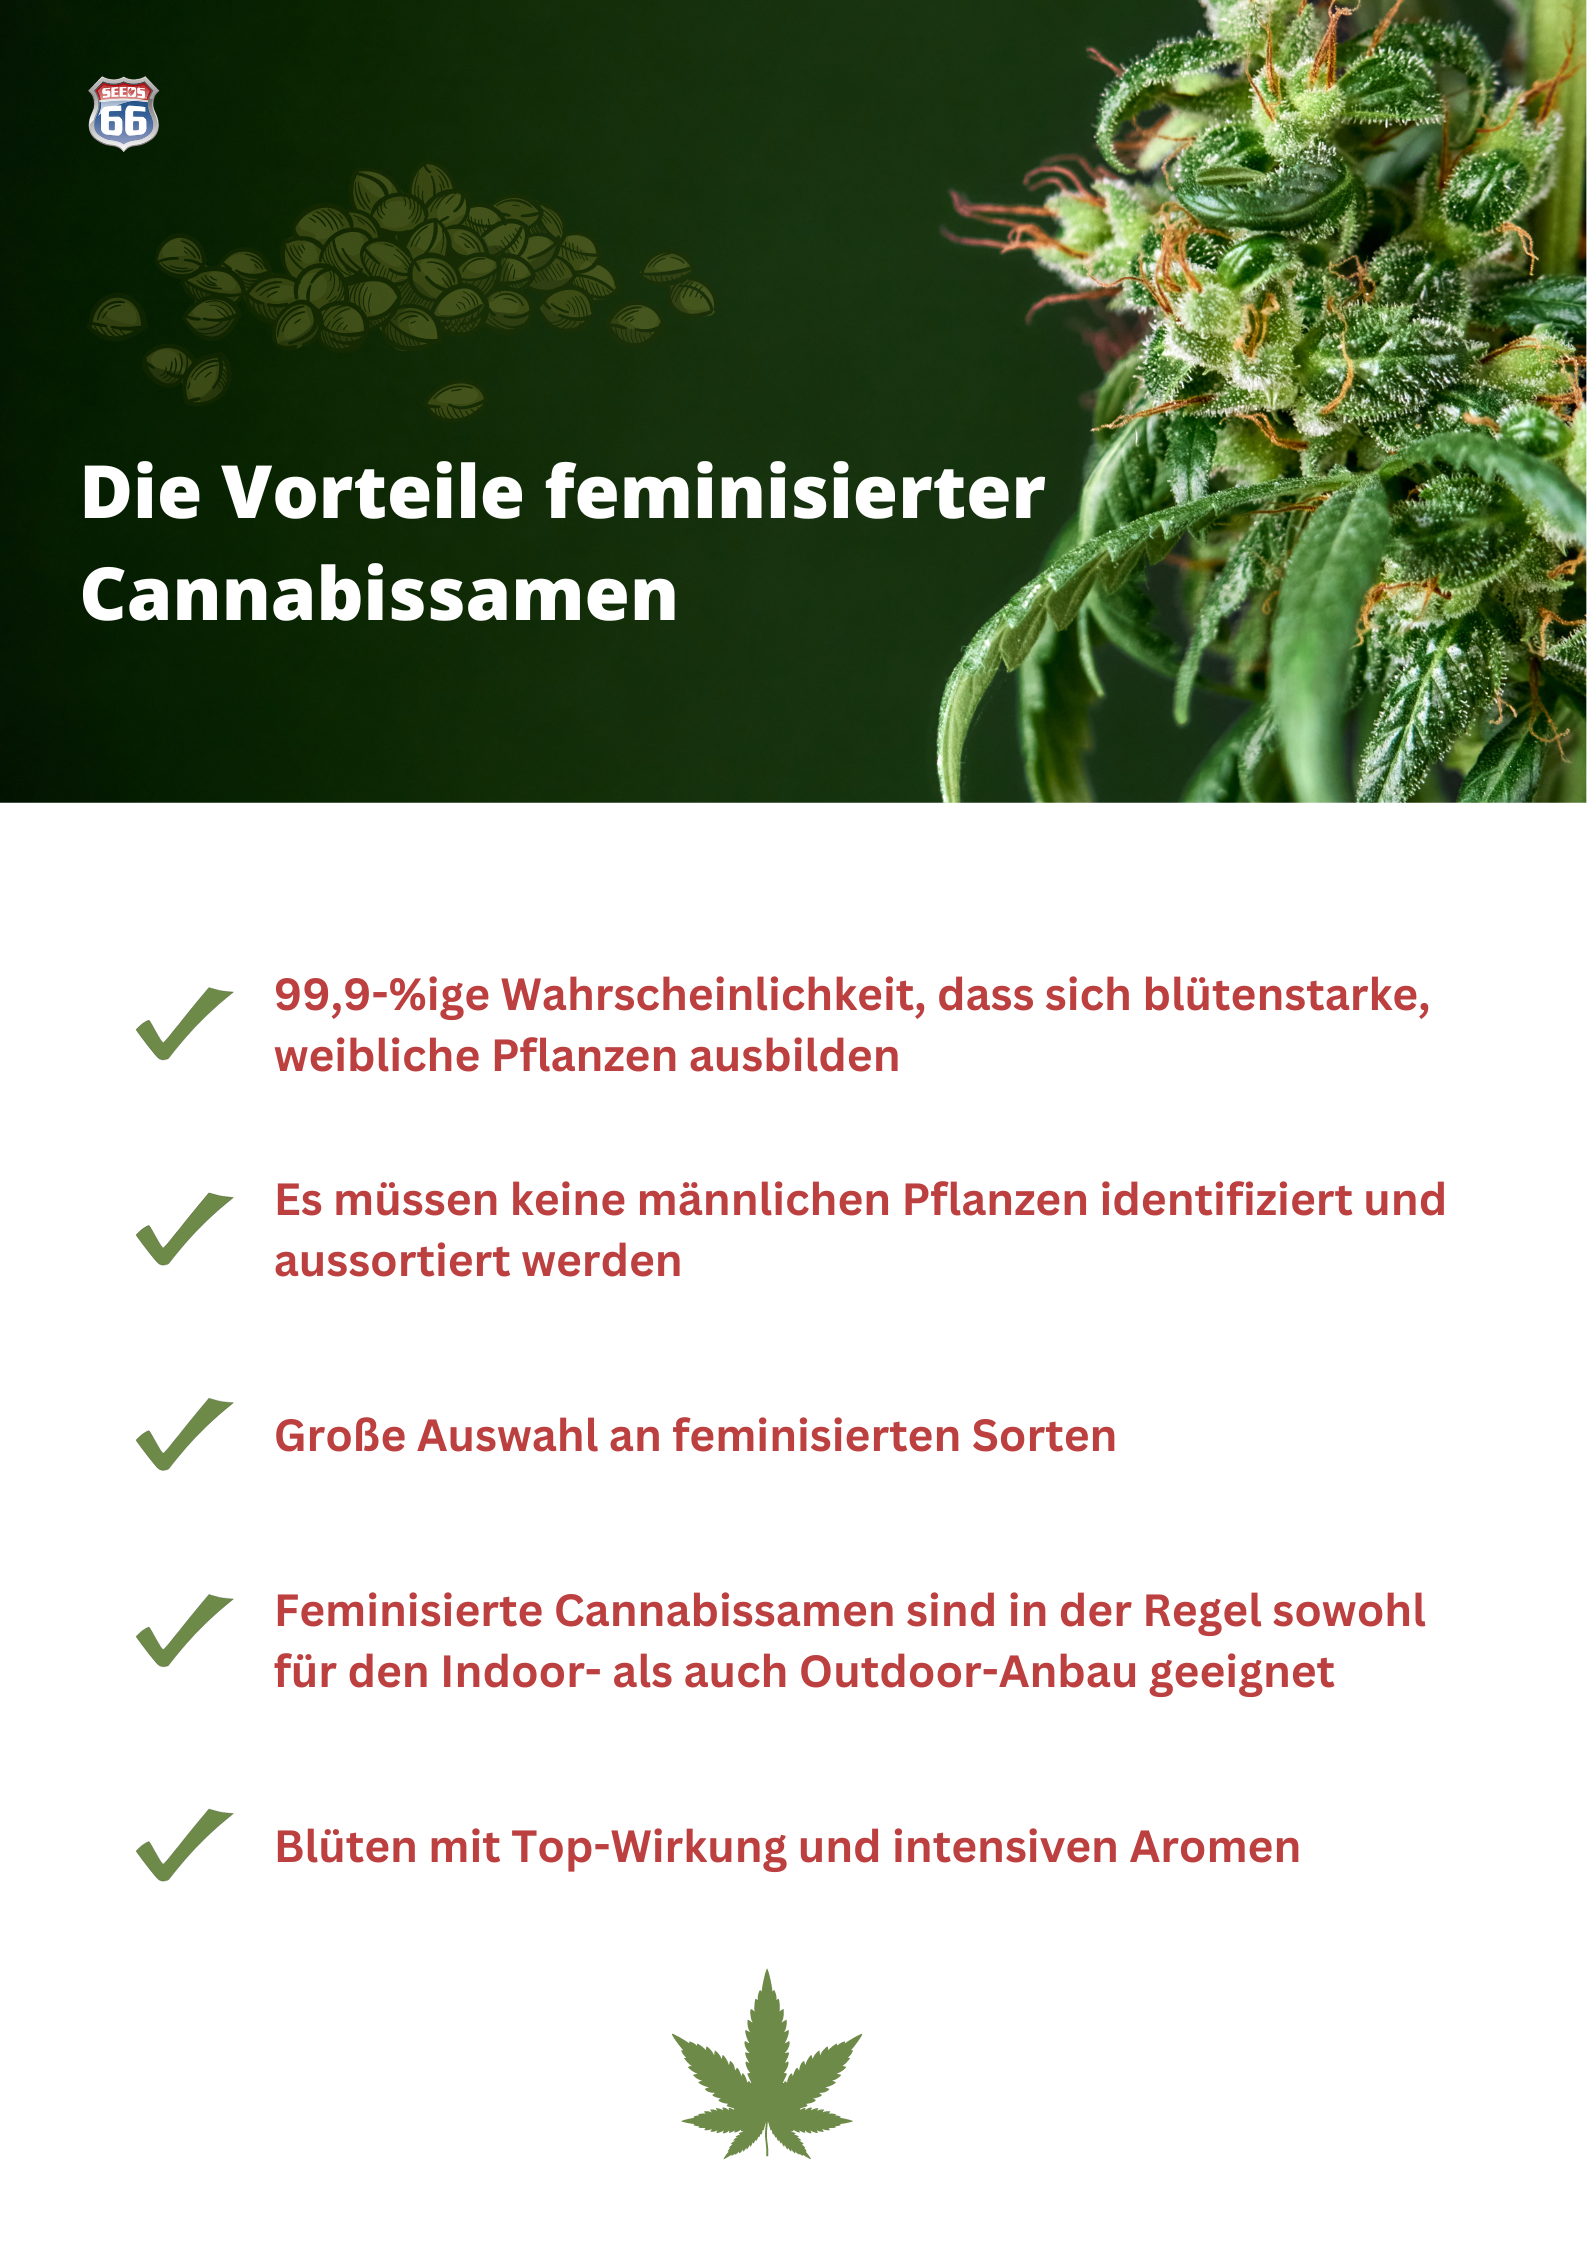 infografik_vorteile_feminisierte_cannabissamen